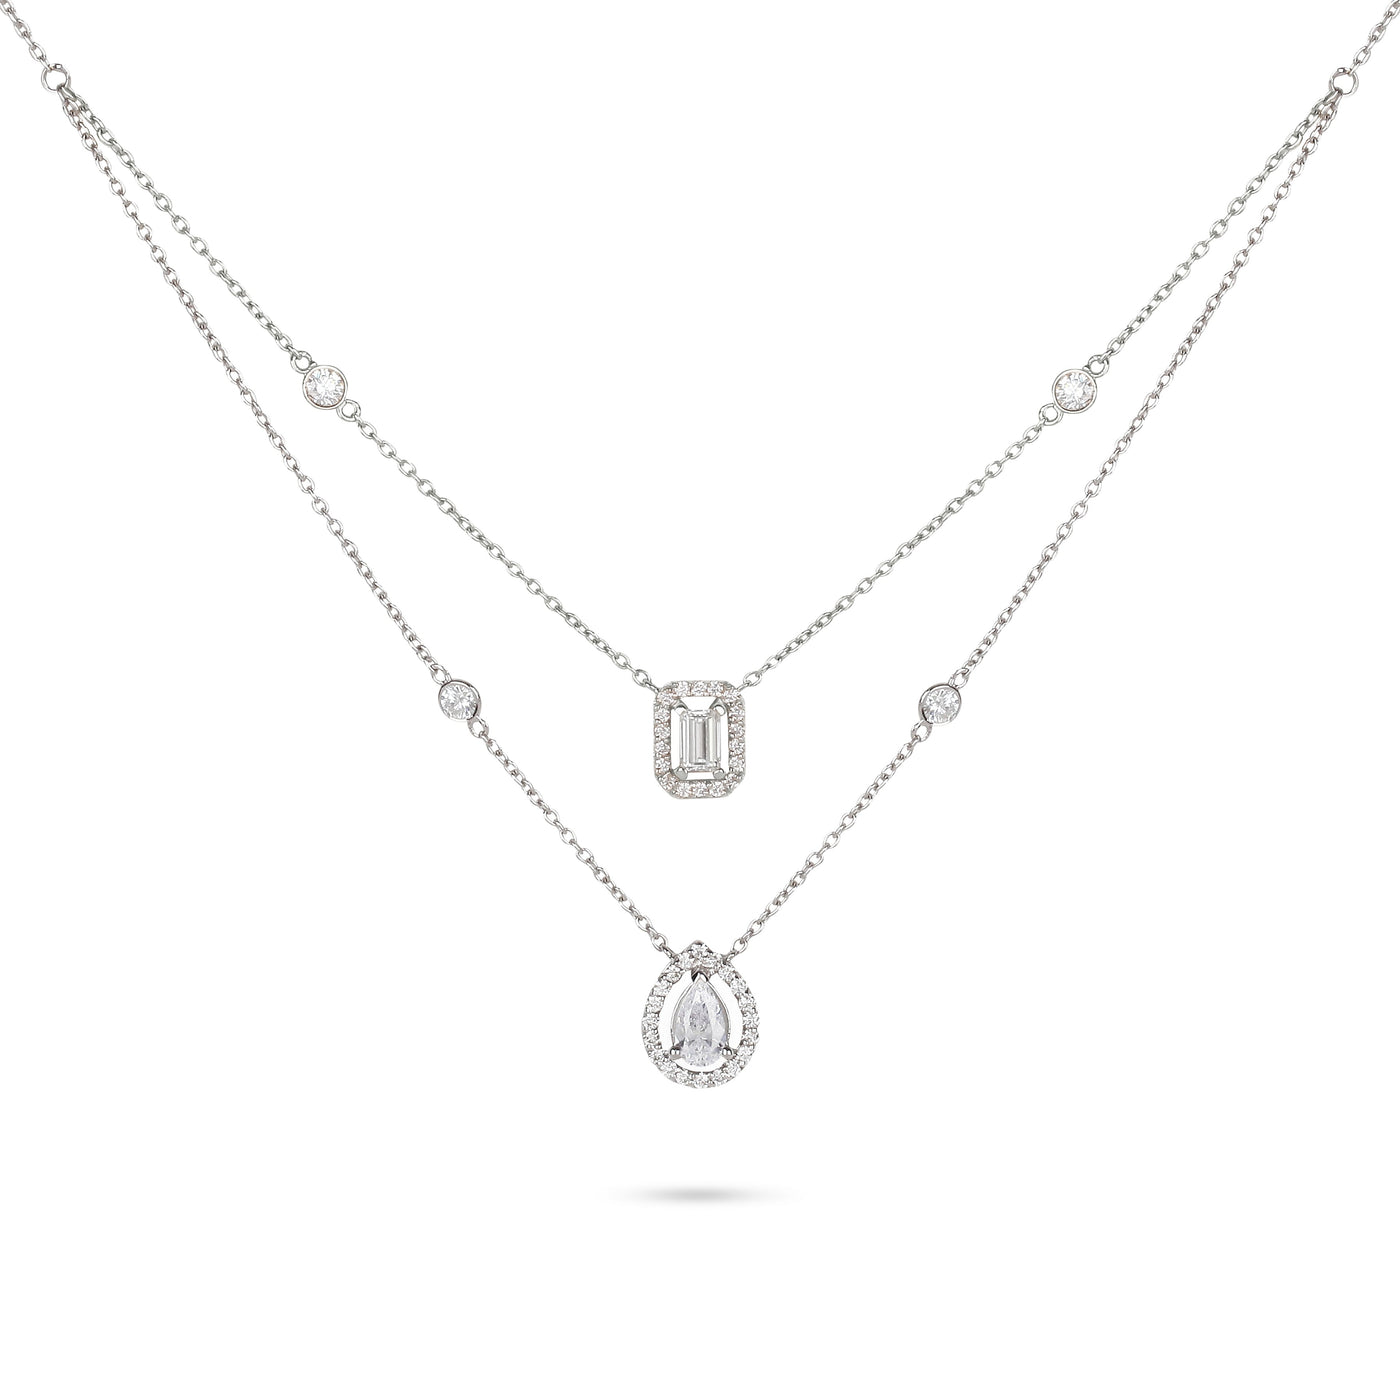 Yessayan 18K White Gold Layer Mixed Cut Diamond Necklace